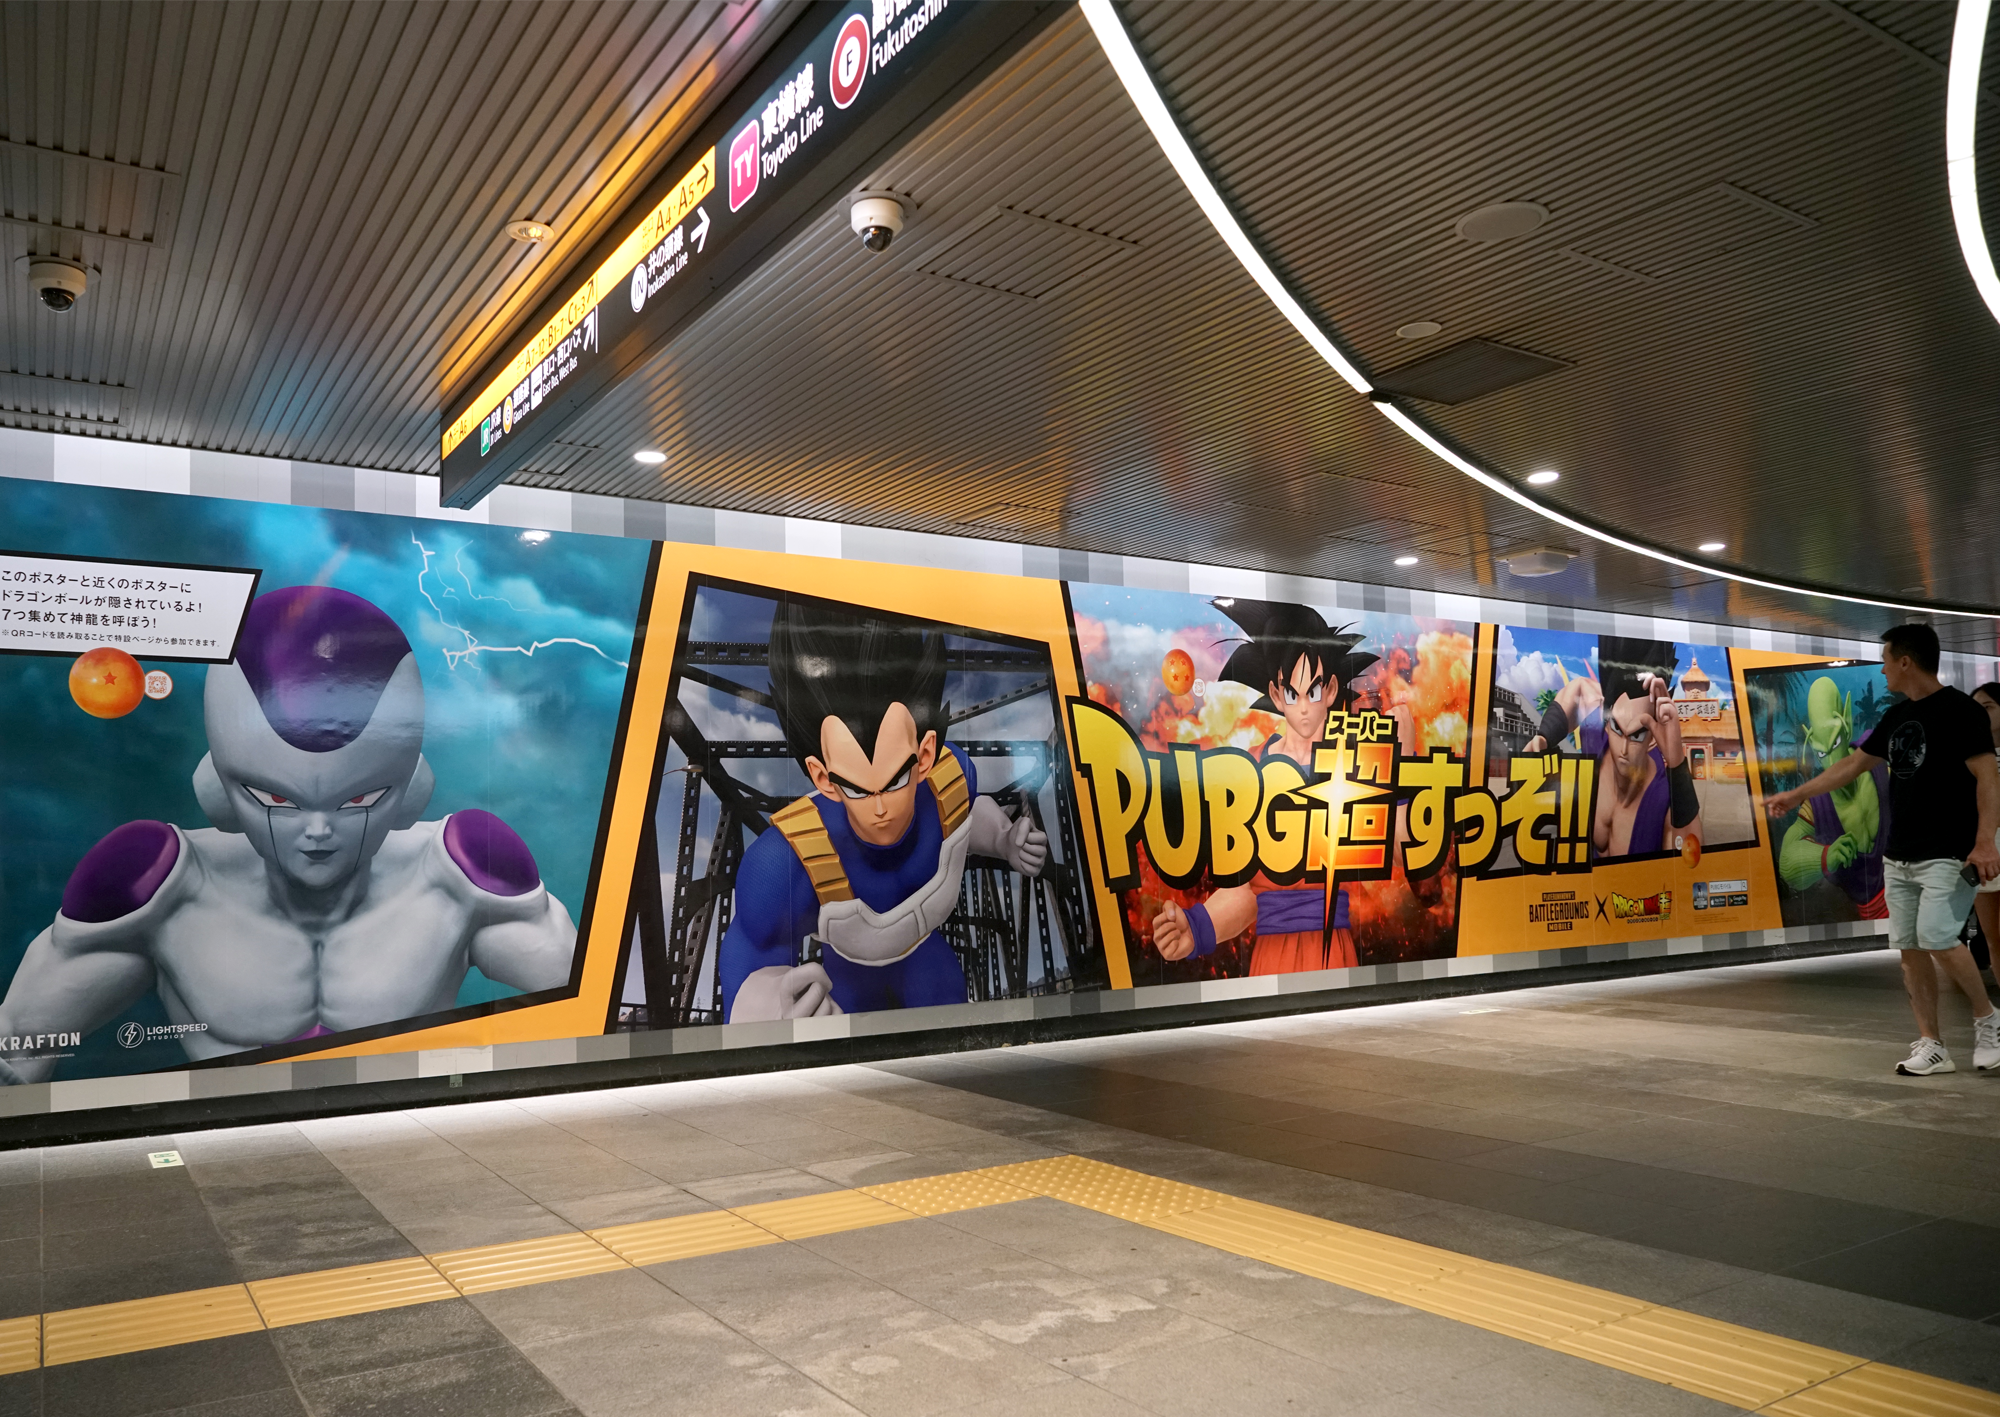 PUBG MOBILE × Dragon Ball Super